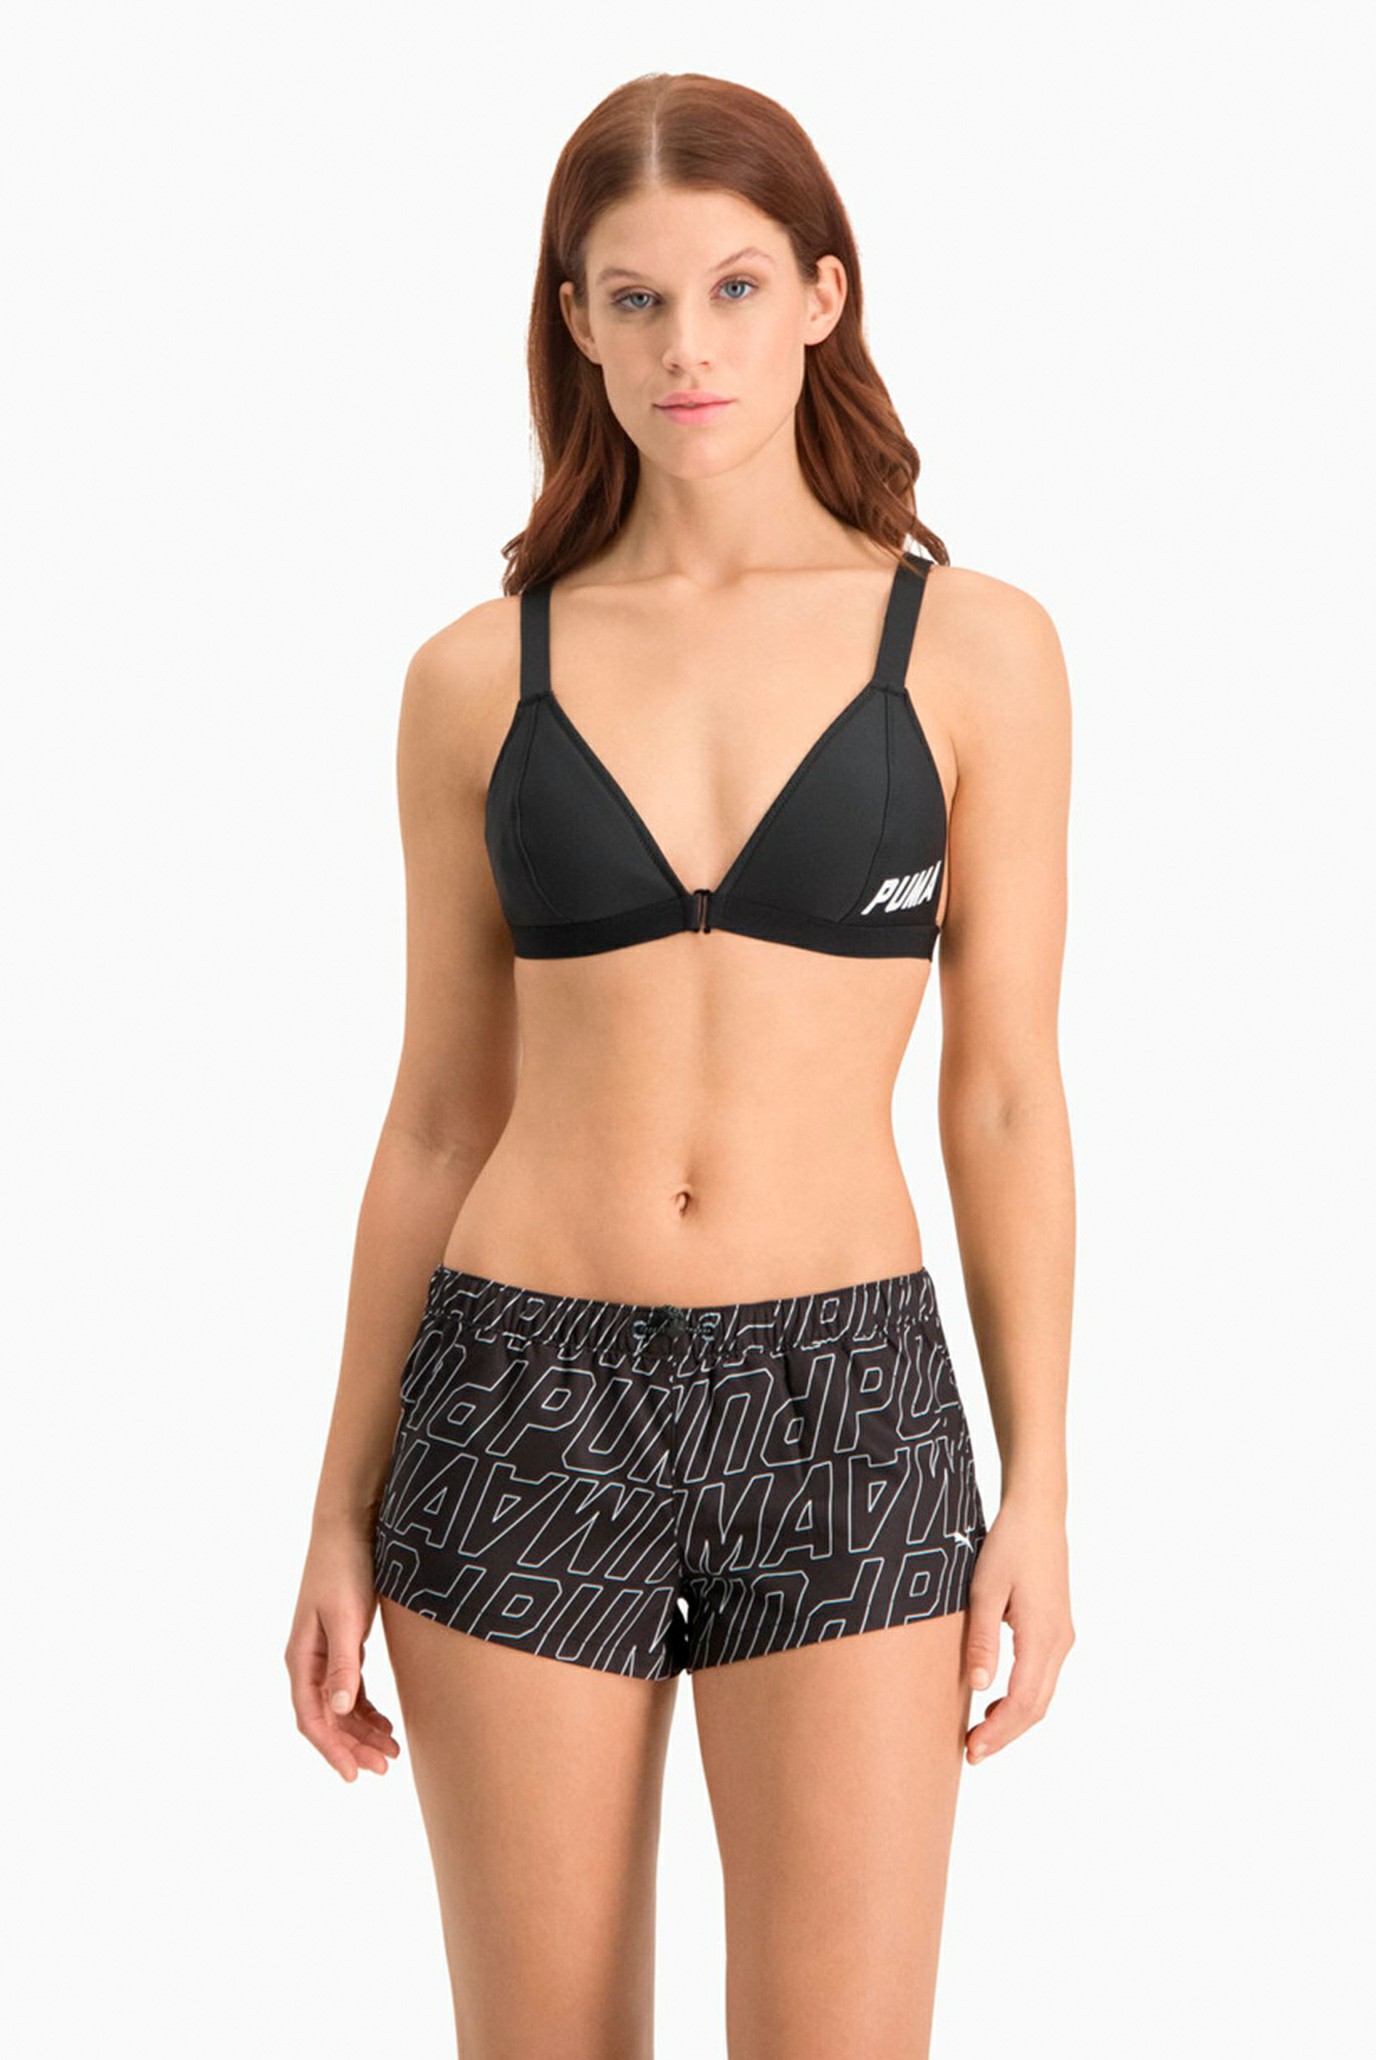 Жіночі чорні плавальні шорти з візерунком Swim Women’s Printed Boardshorts 1